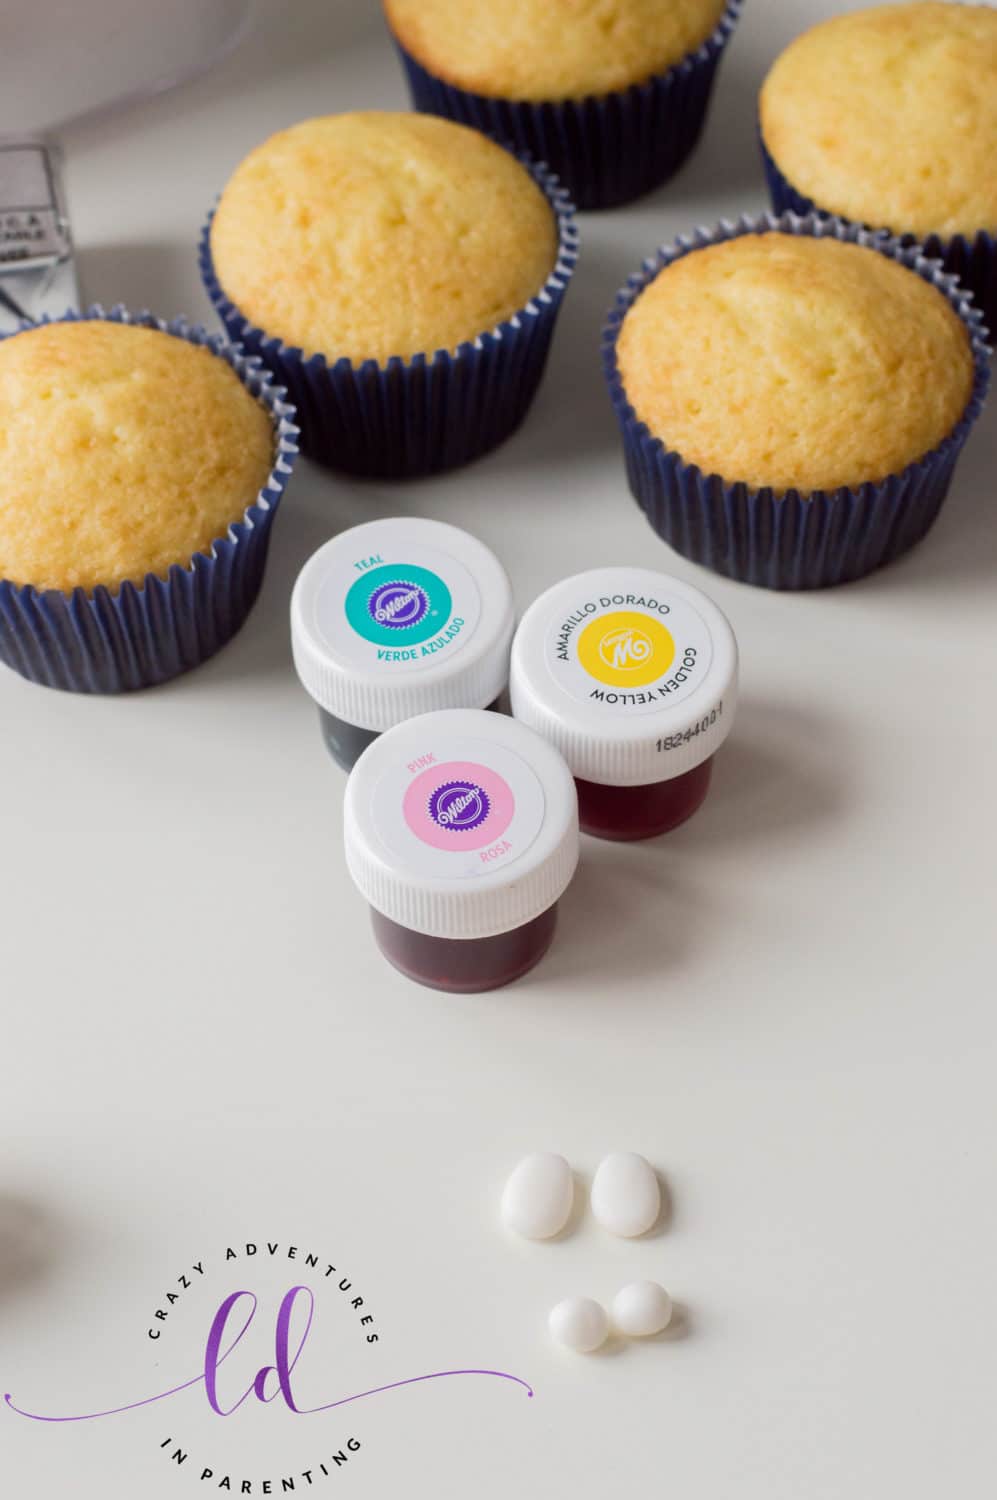 Create fondant spheres for Tie-Dye Poop Emoji Cupcakes